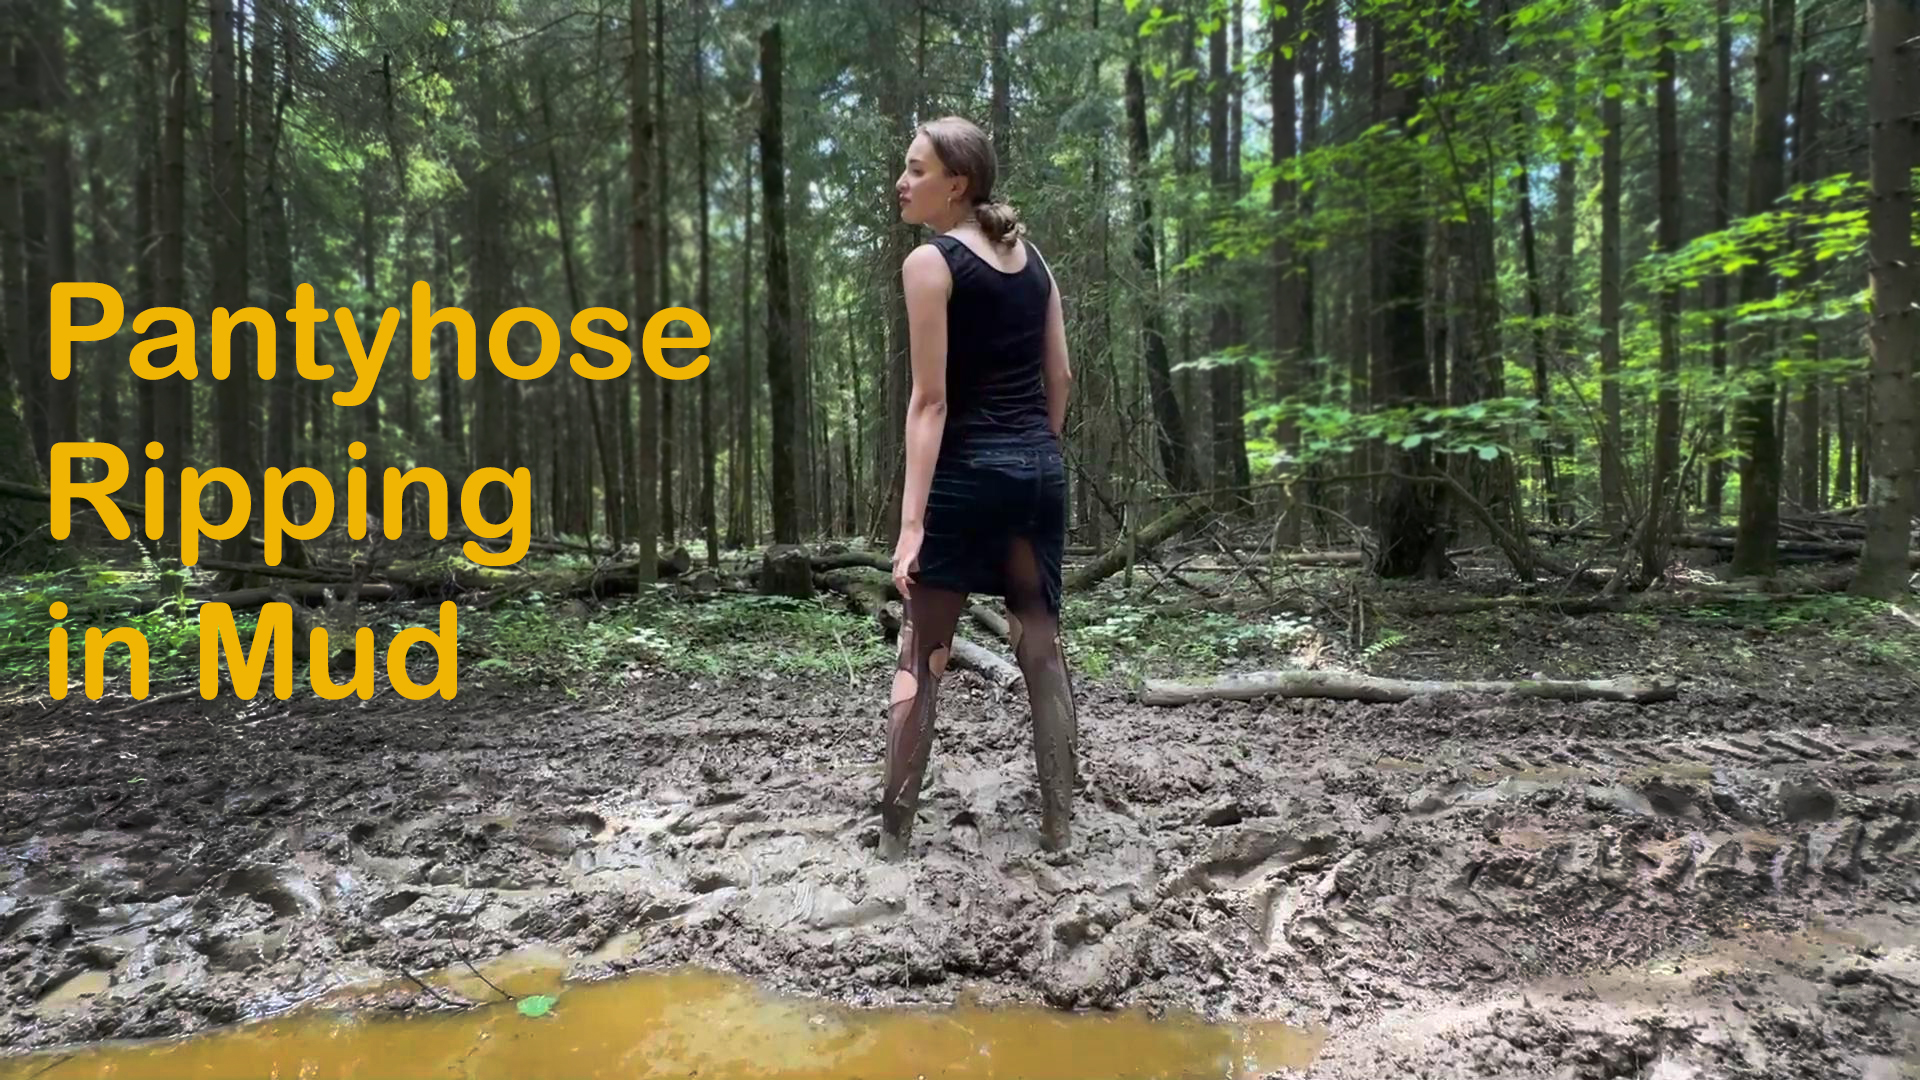 Pantyhose in mud, girl barefoot walking in mud, ripped pantyhose in mud ...